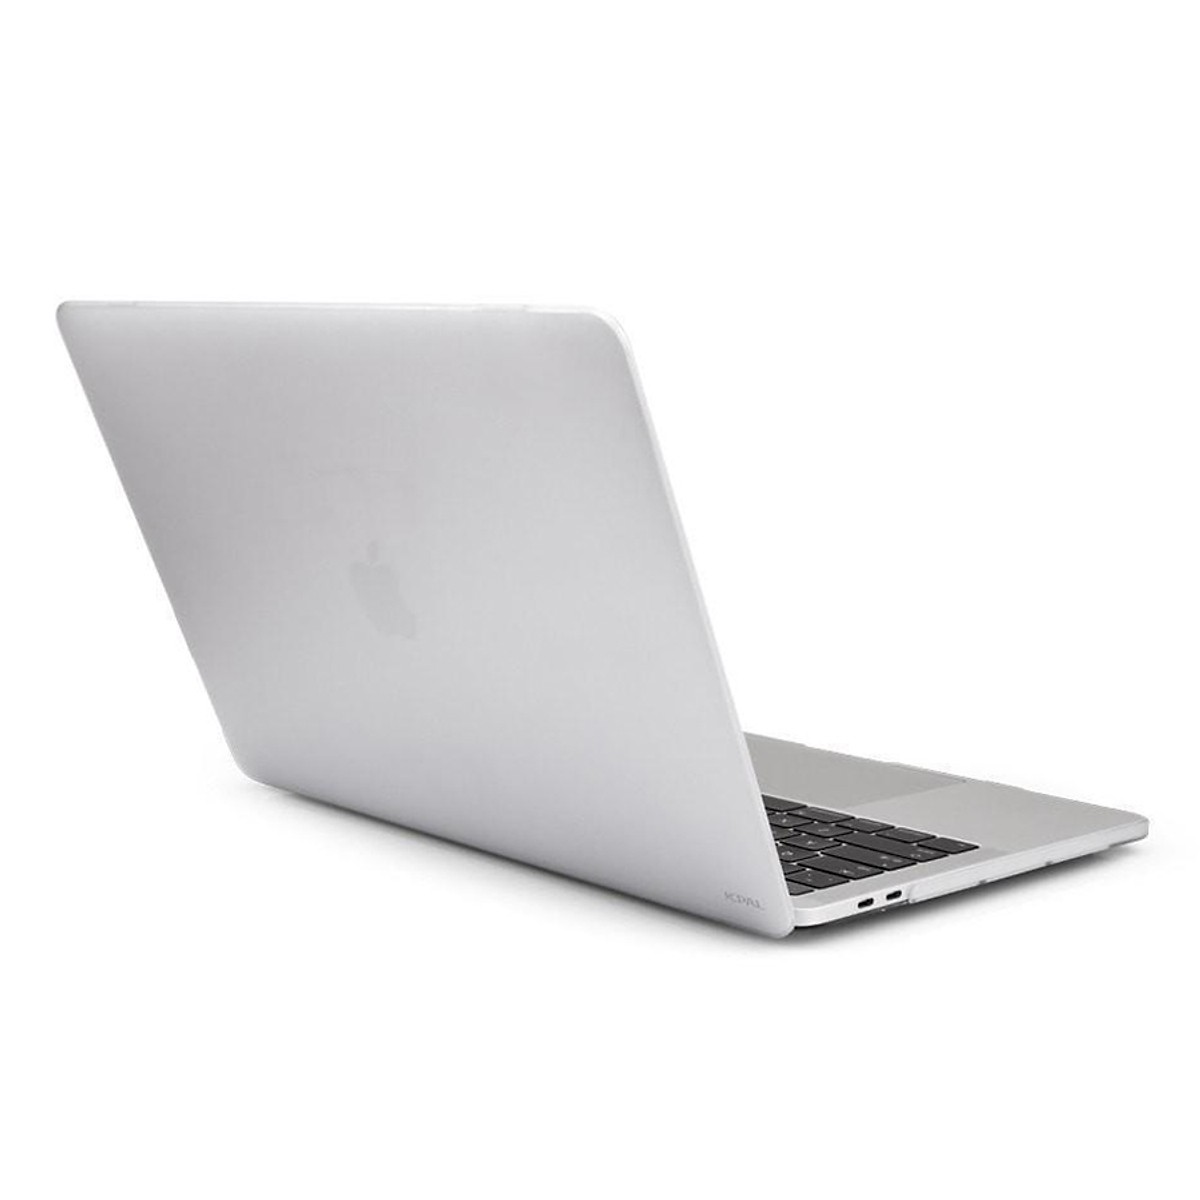 Ốp Lưng JCPAL Cho Macbook 13” New Pro Touchbar/ No touchbar (A1706 - A1708) - Hàng chính hãng